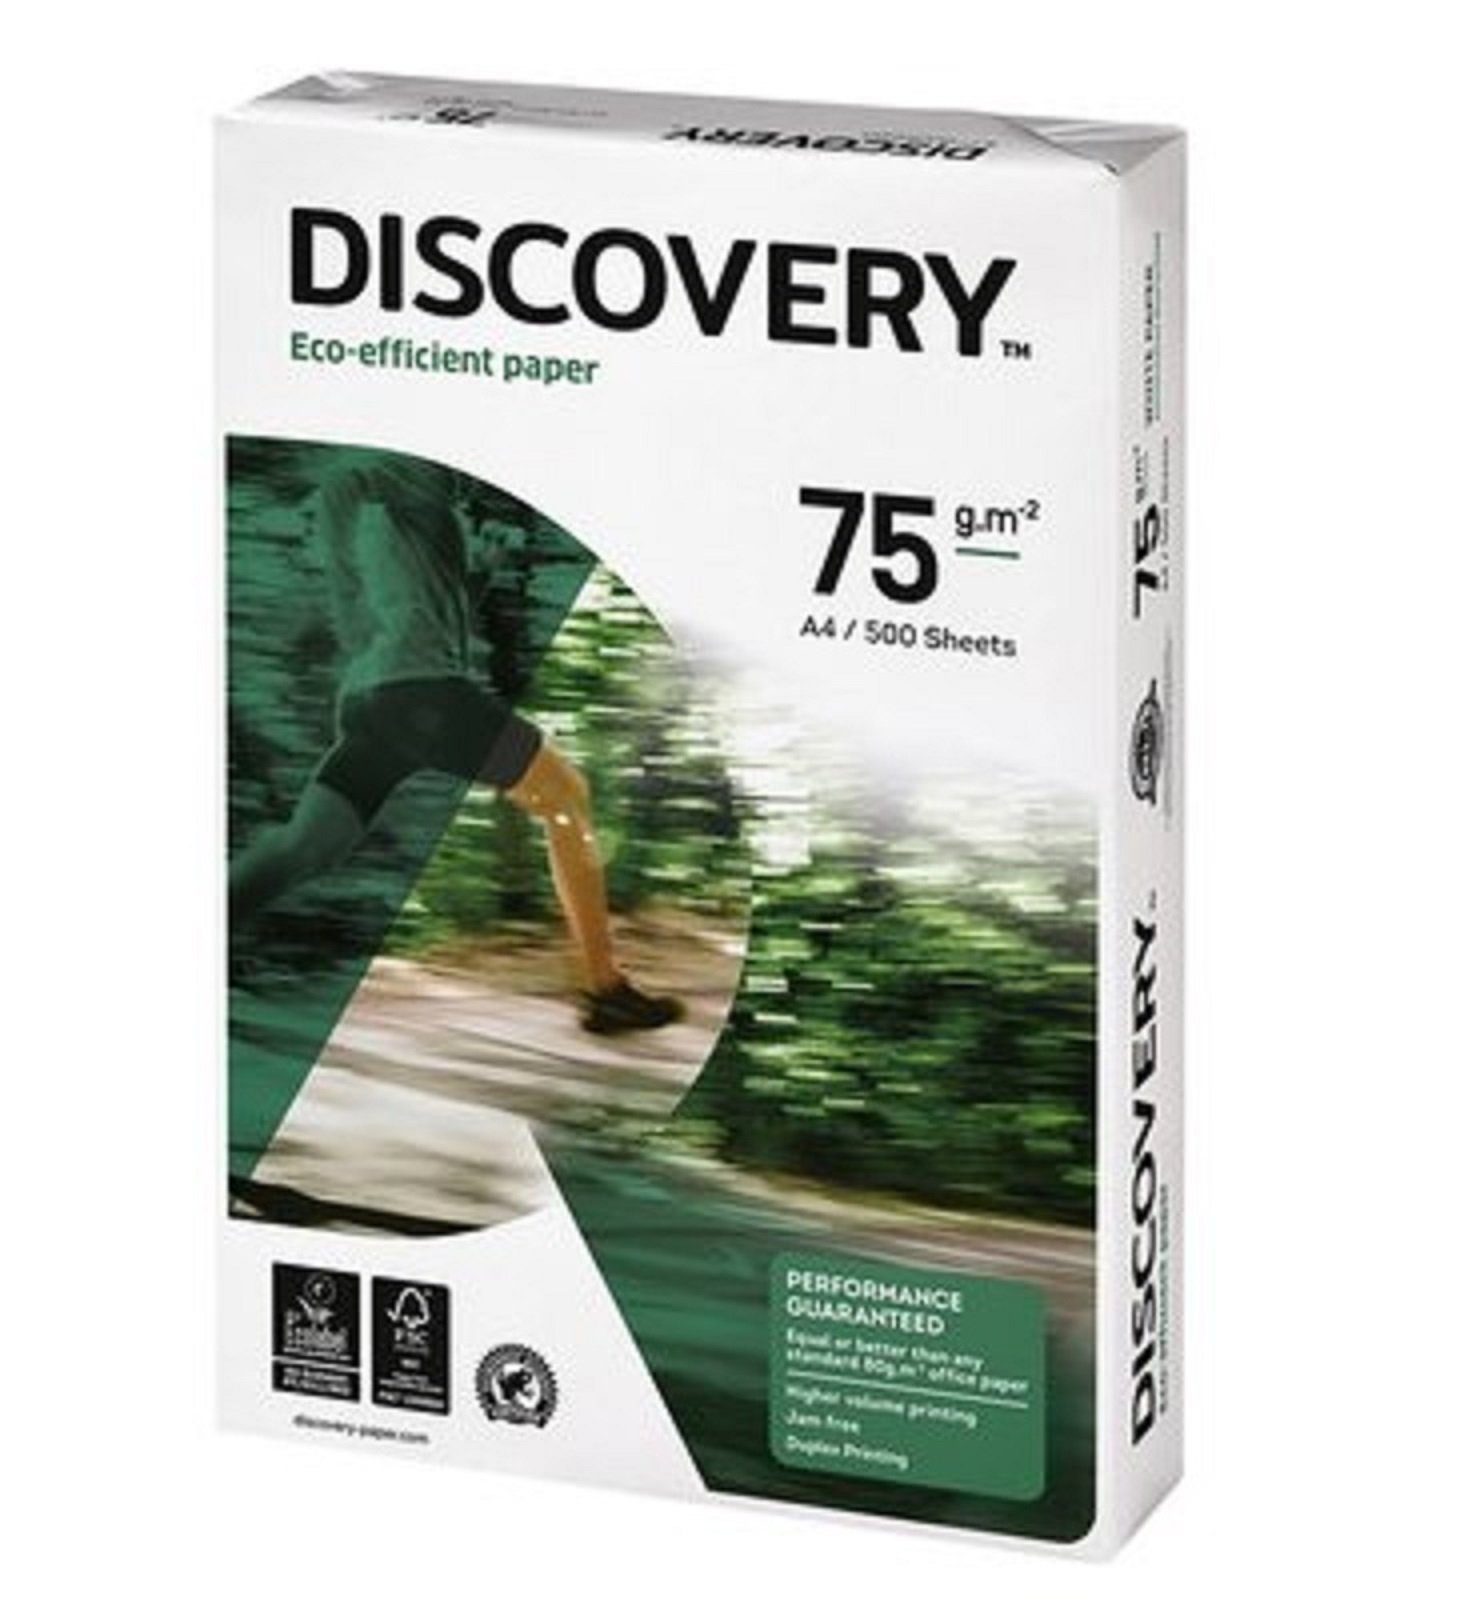 Discovery, Amy hohe 500 Druckqualität 75g/qm², Drucker- Blatt too beidseitig und Kopierpapier